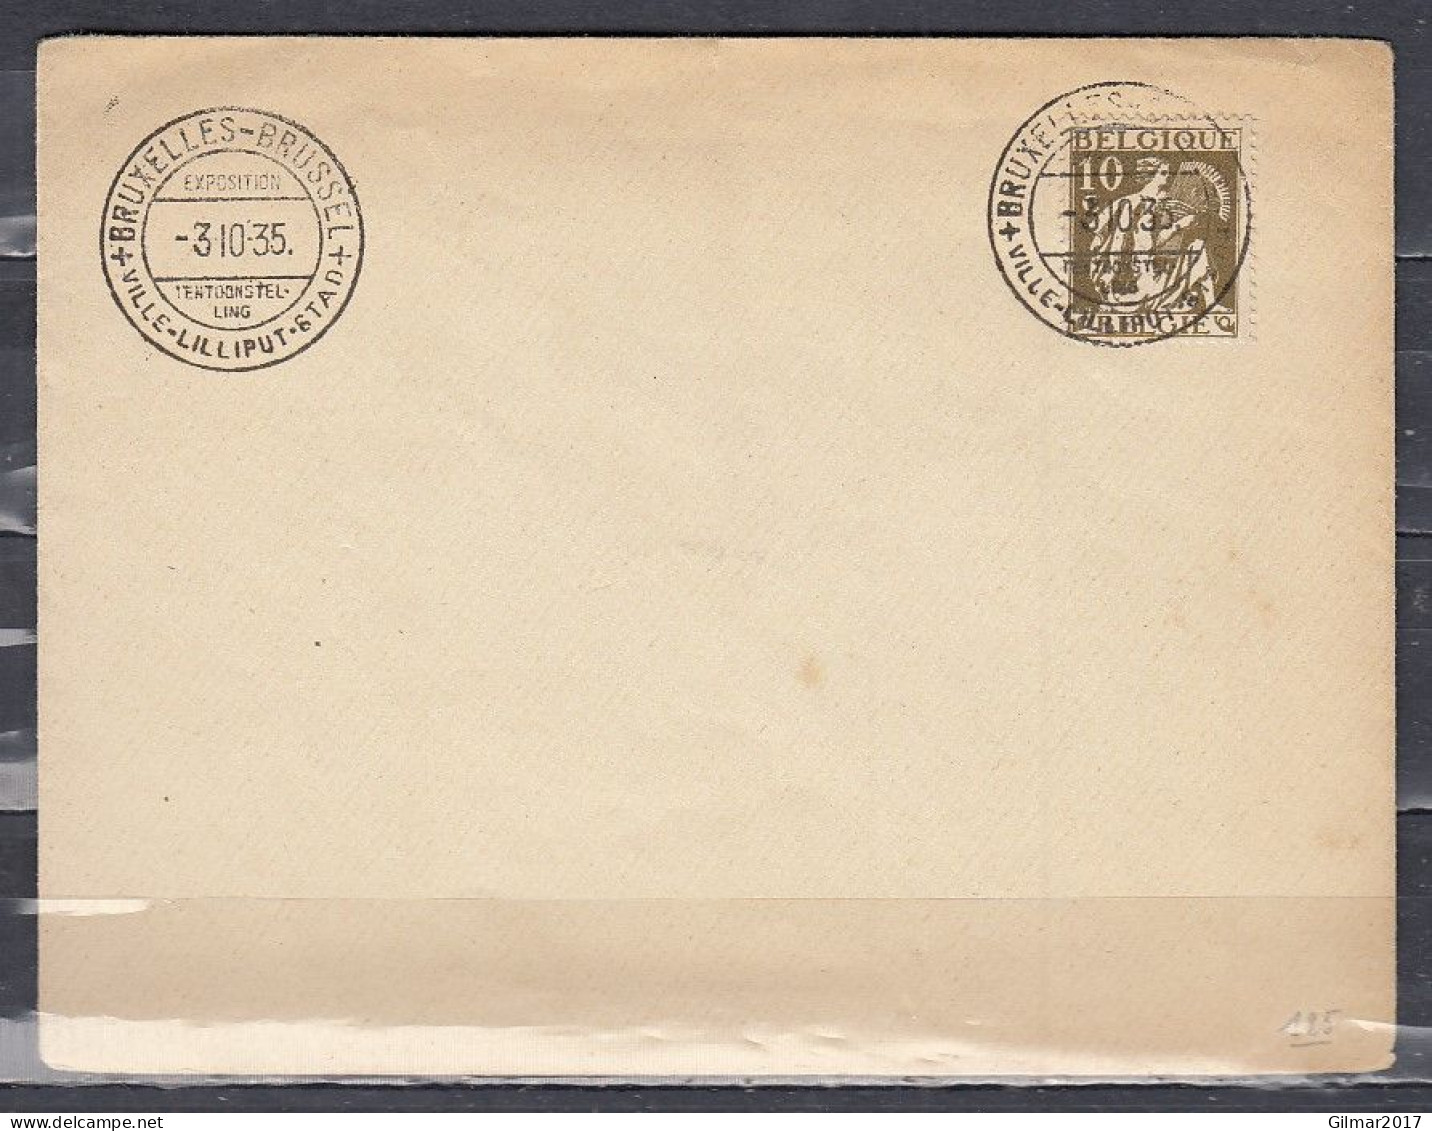 Brief Van Bruxelles-Brussel Ville Lilliput Stad - 1932 Ceres Y Mercurio